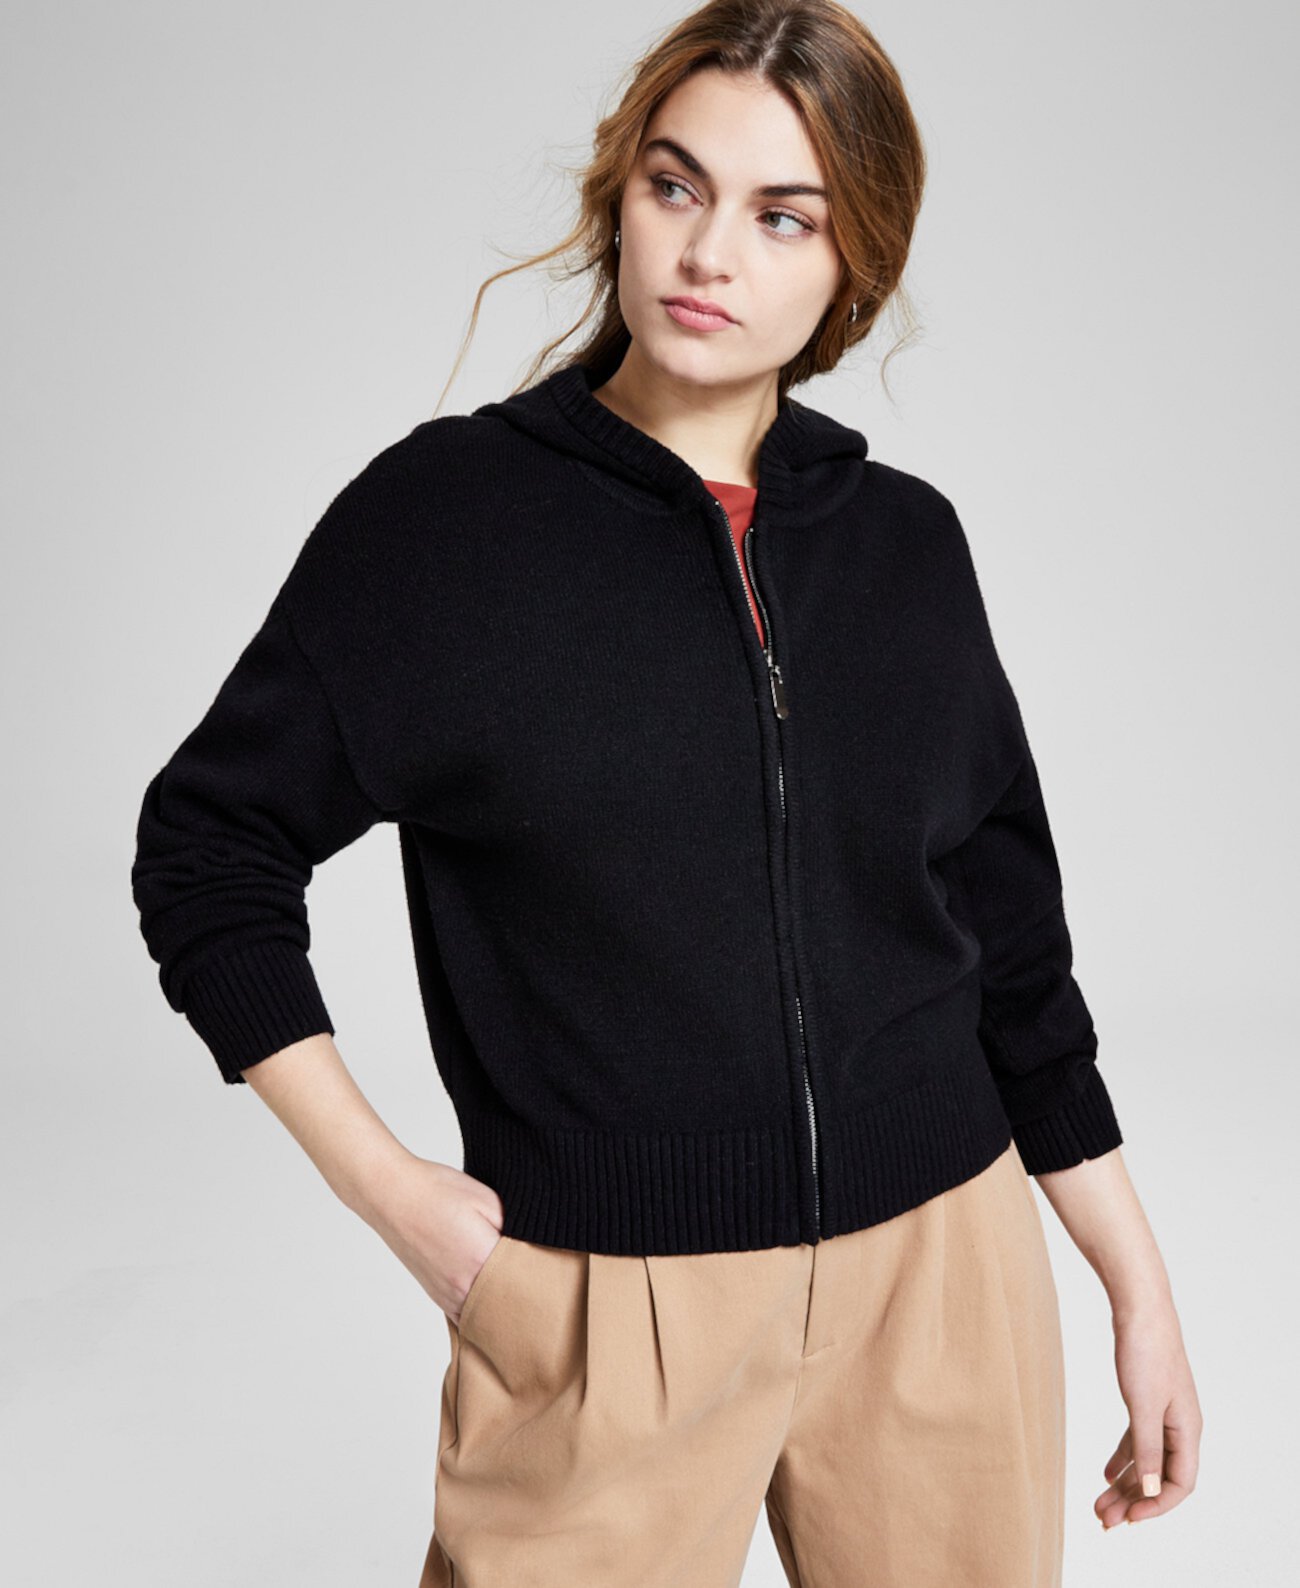 Женский свитер с капюшоном на молнии во всю длину, созданный для Macy's And Now This